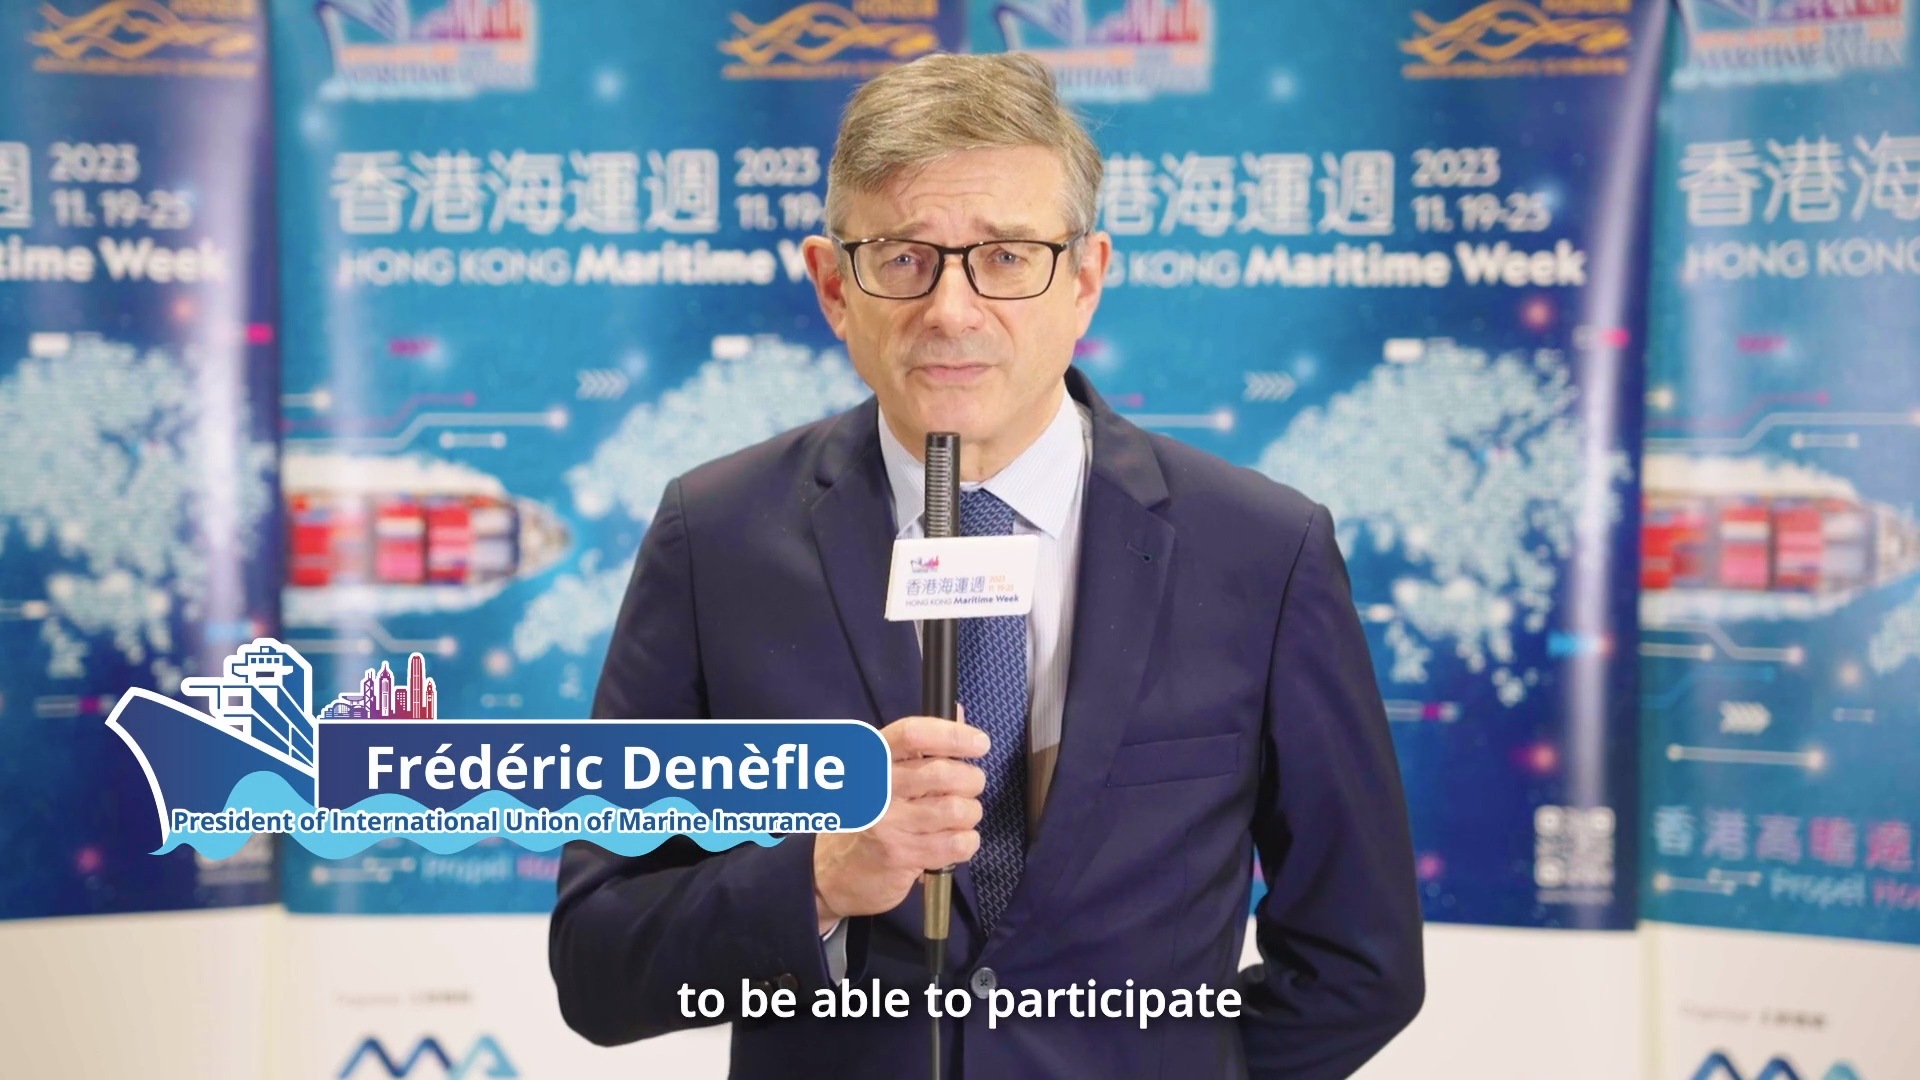 香港海运周2023 - 国际航运保险联盟主席Frédéric Denèfle先生 (只有英文)